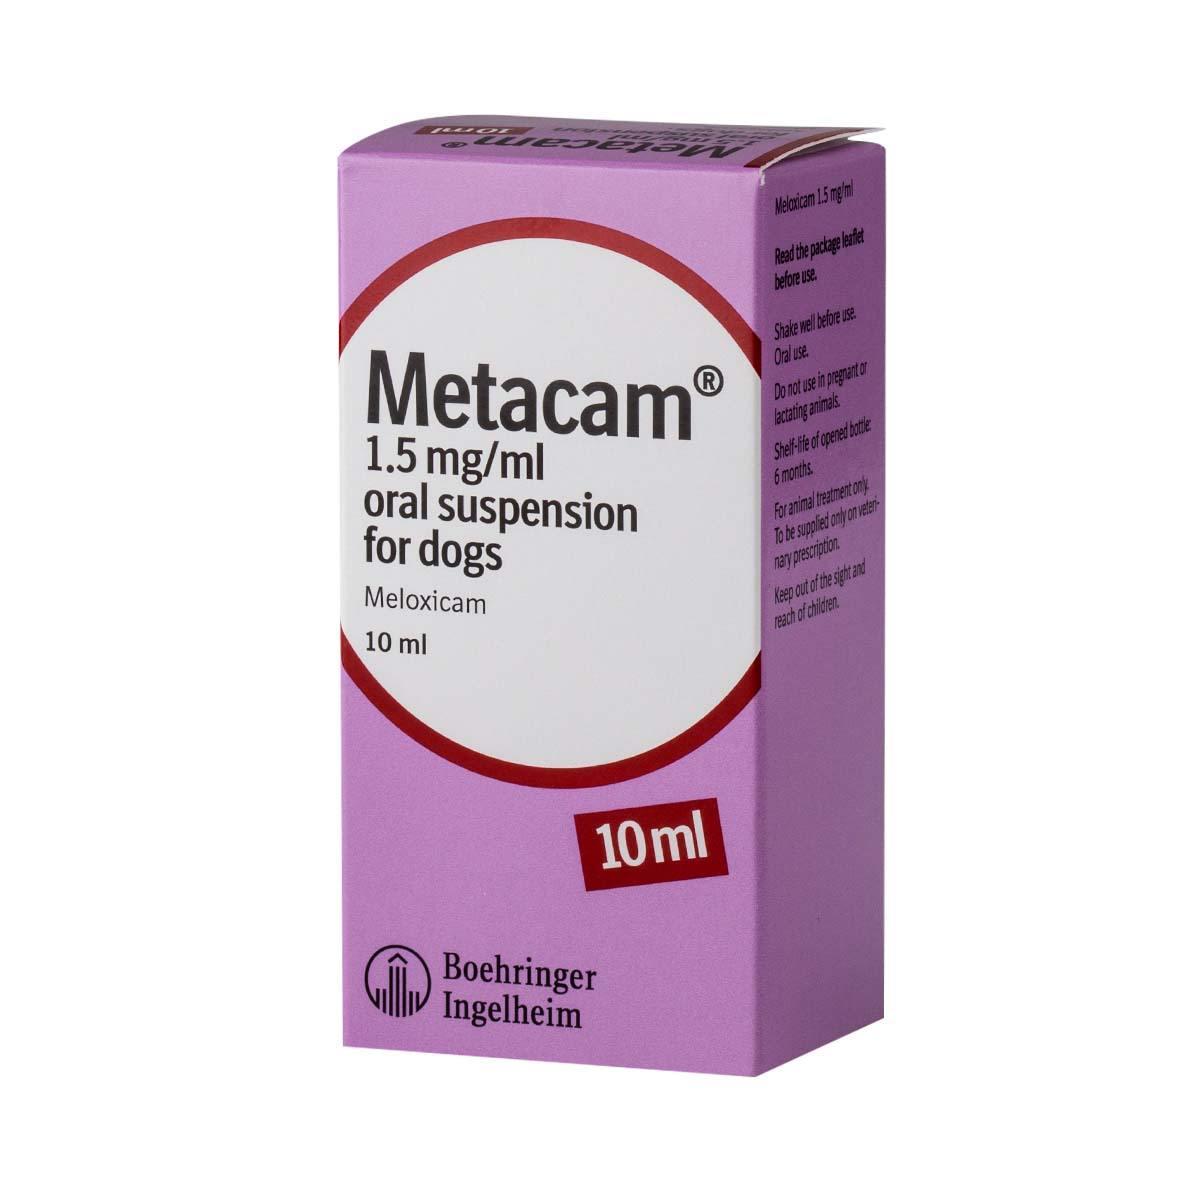 does metacam make dogs sleepy